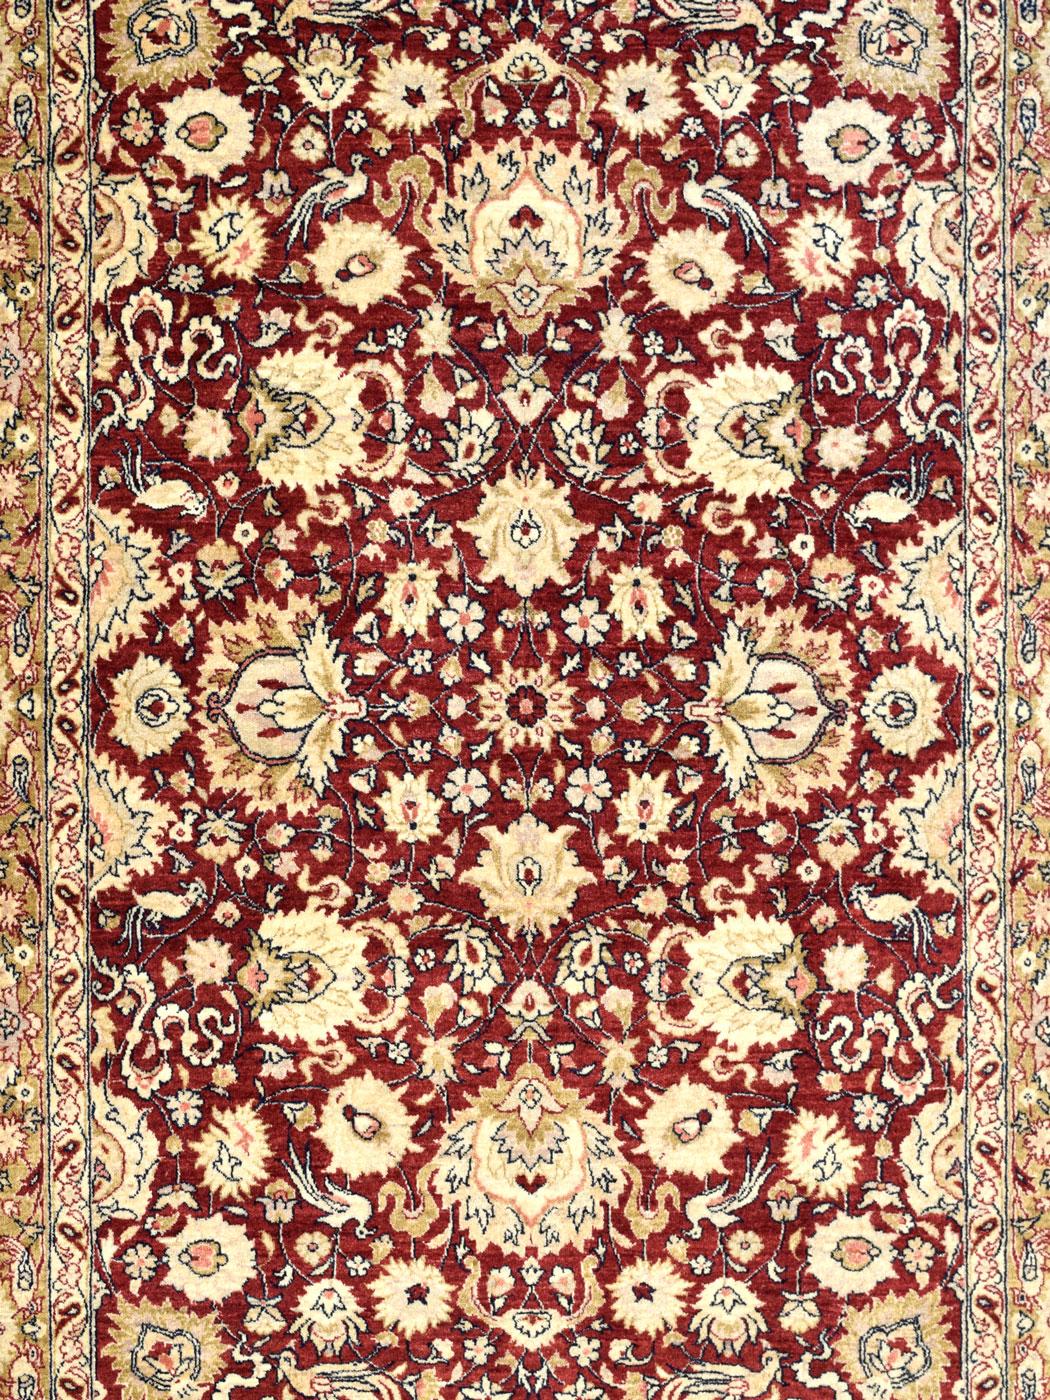 De riches tons de rouge, d'or et de crème évoquent l'élégance dans ce tapis persan en pure laine utilisant le tissage Mohtasham exquis d'Orley Shabahang dans une taille polyvalente de 5' x 7'. Mesurant exactement 5'2